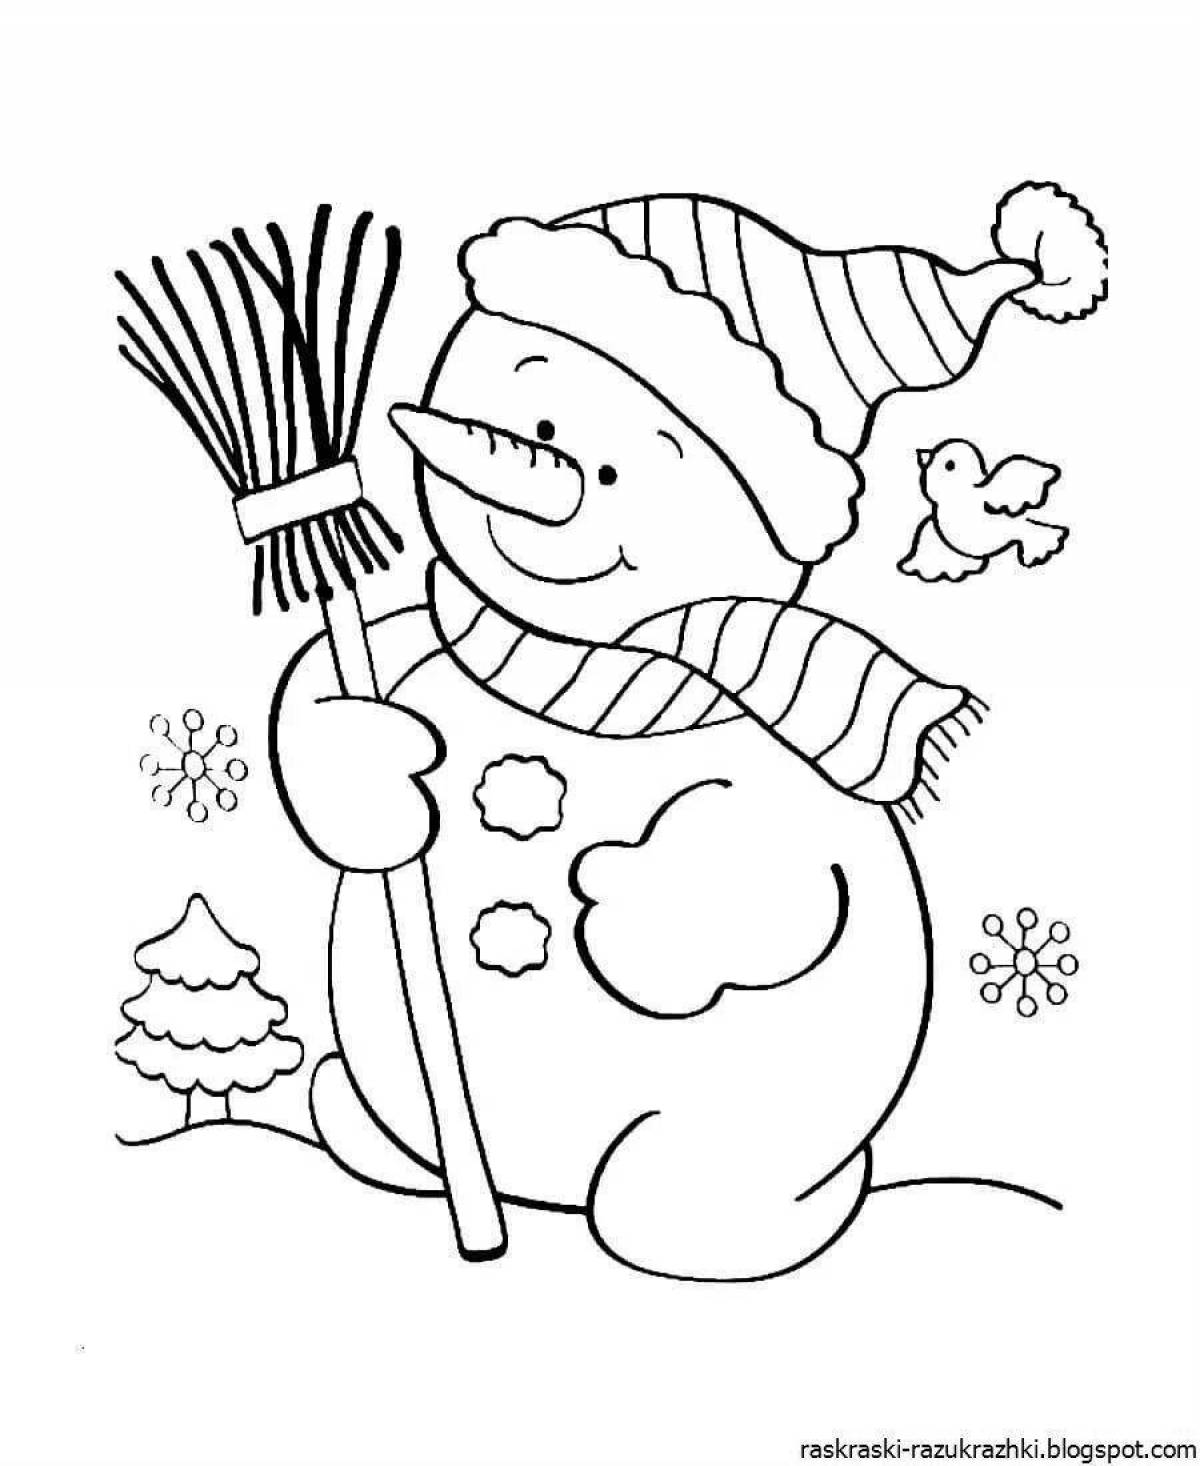 Волшебная раскраска снеговик для детей 3-4 лет